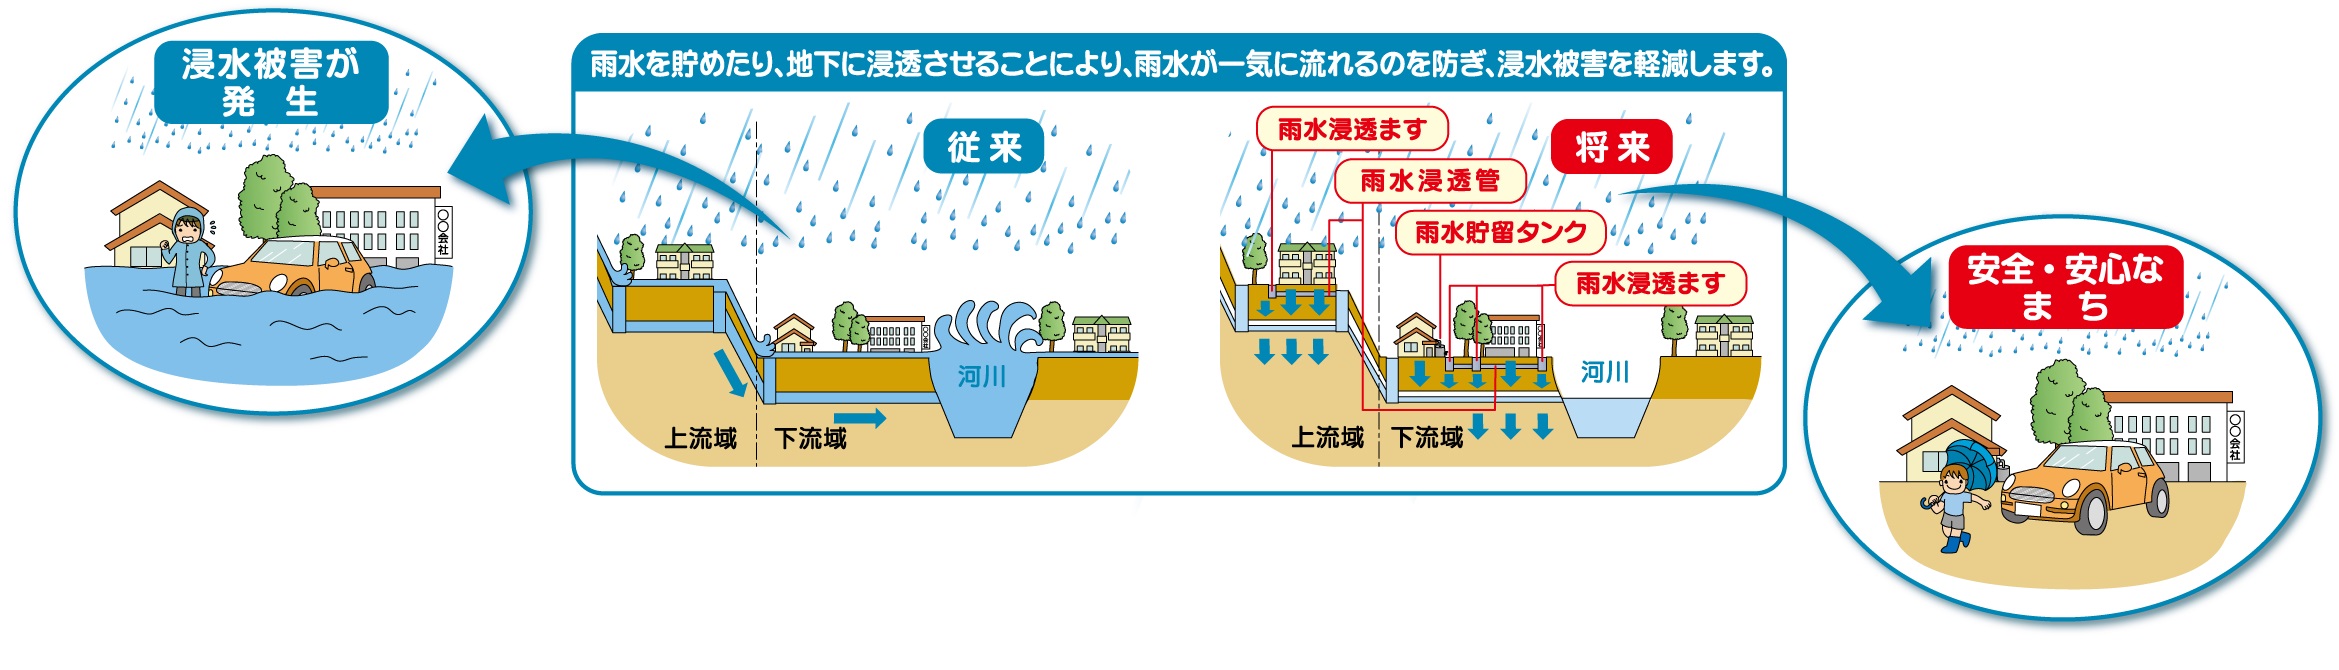 雨水貯留タンク、雨水浸透ますによる浸水被害を軽減する仕組みの説明画像